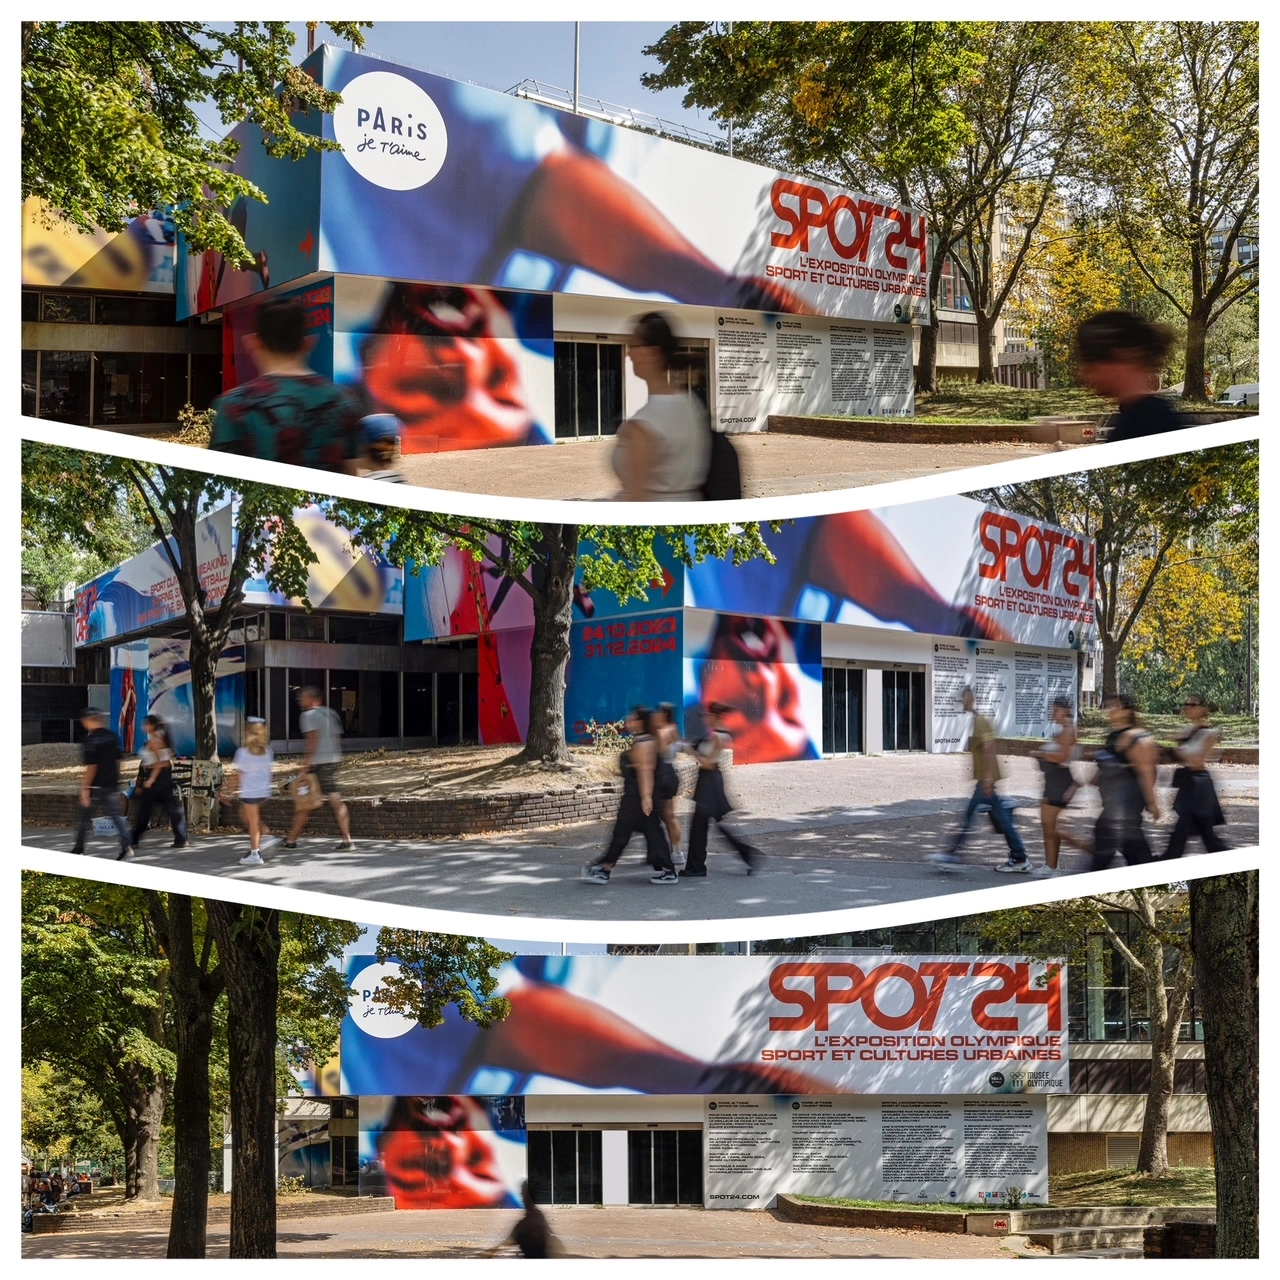 SPOT24 l'exposition sports et cultures urbaines avec le basket 3x3